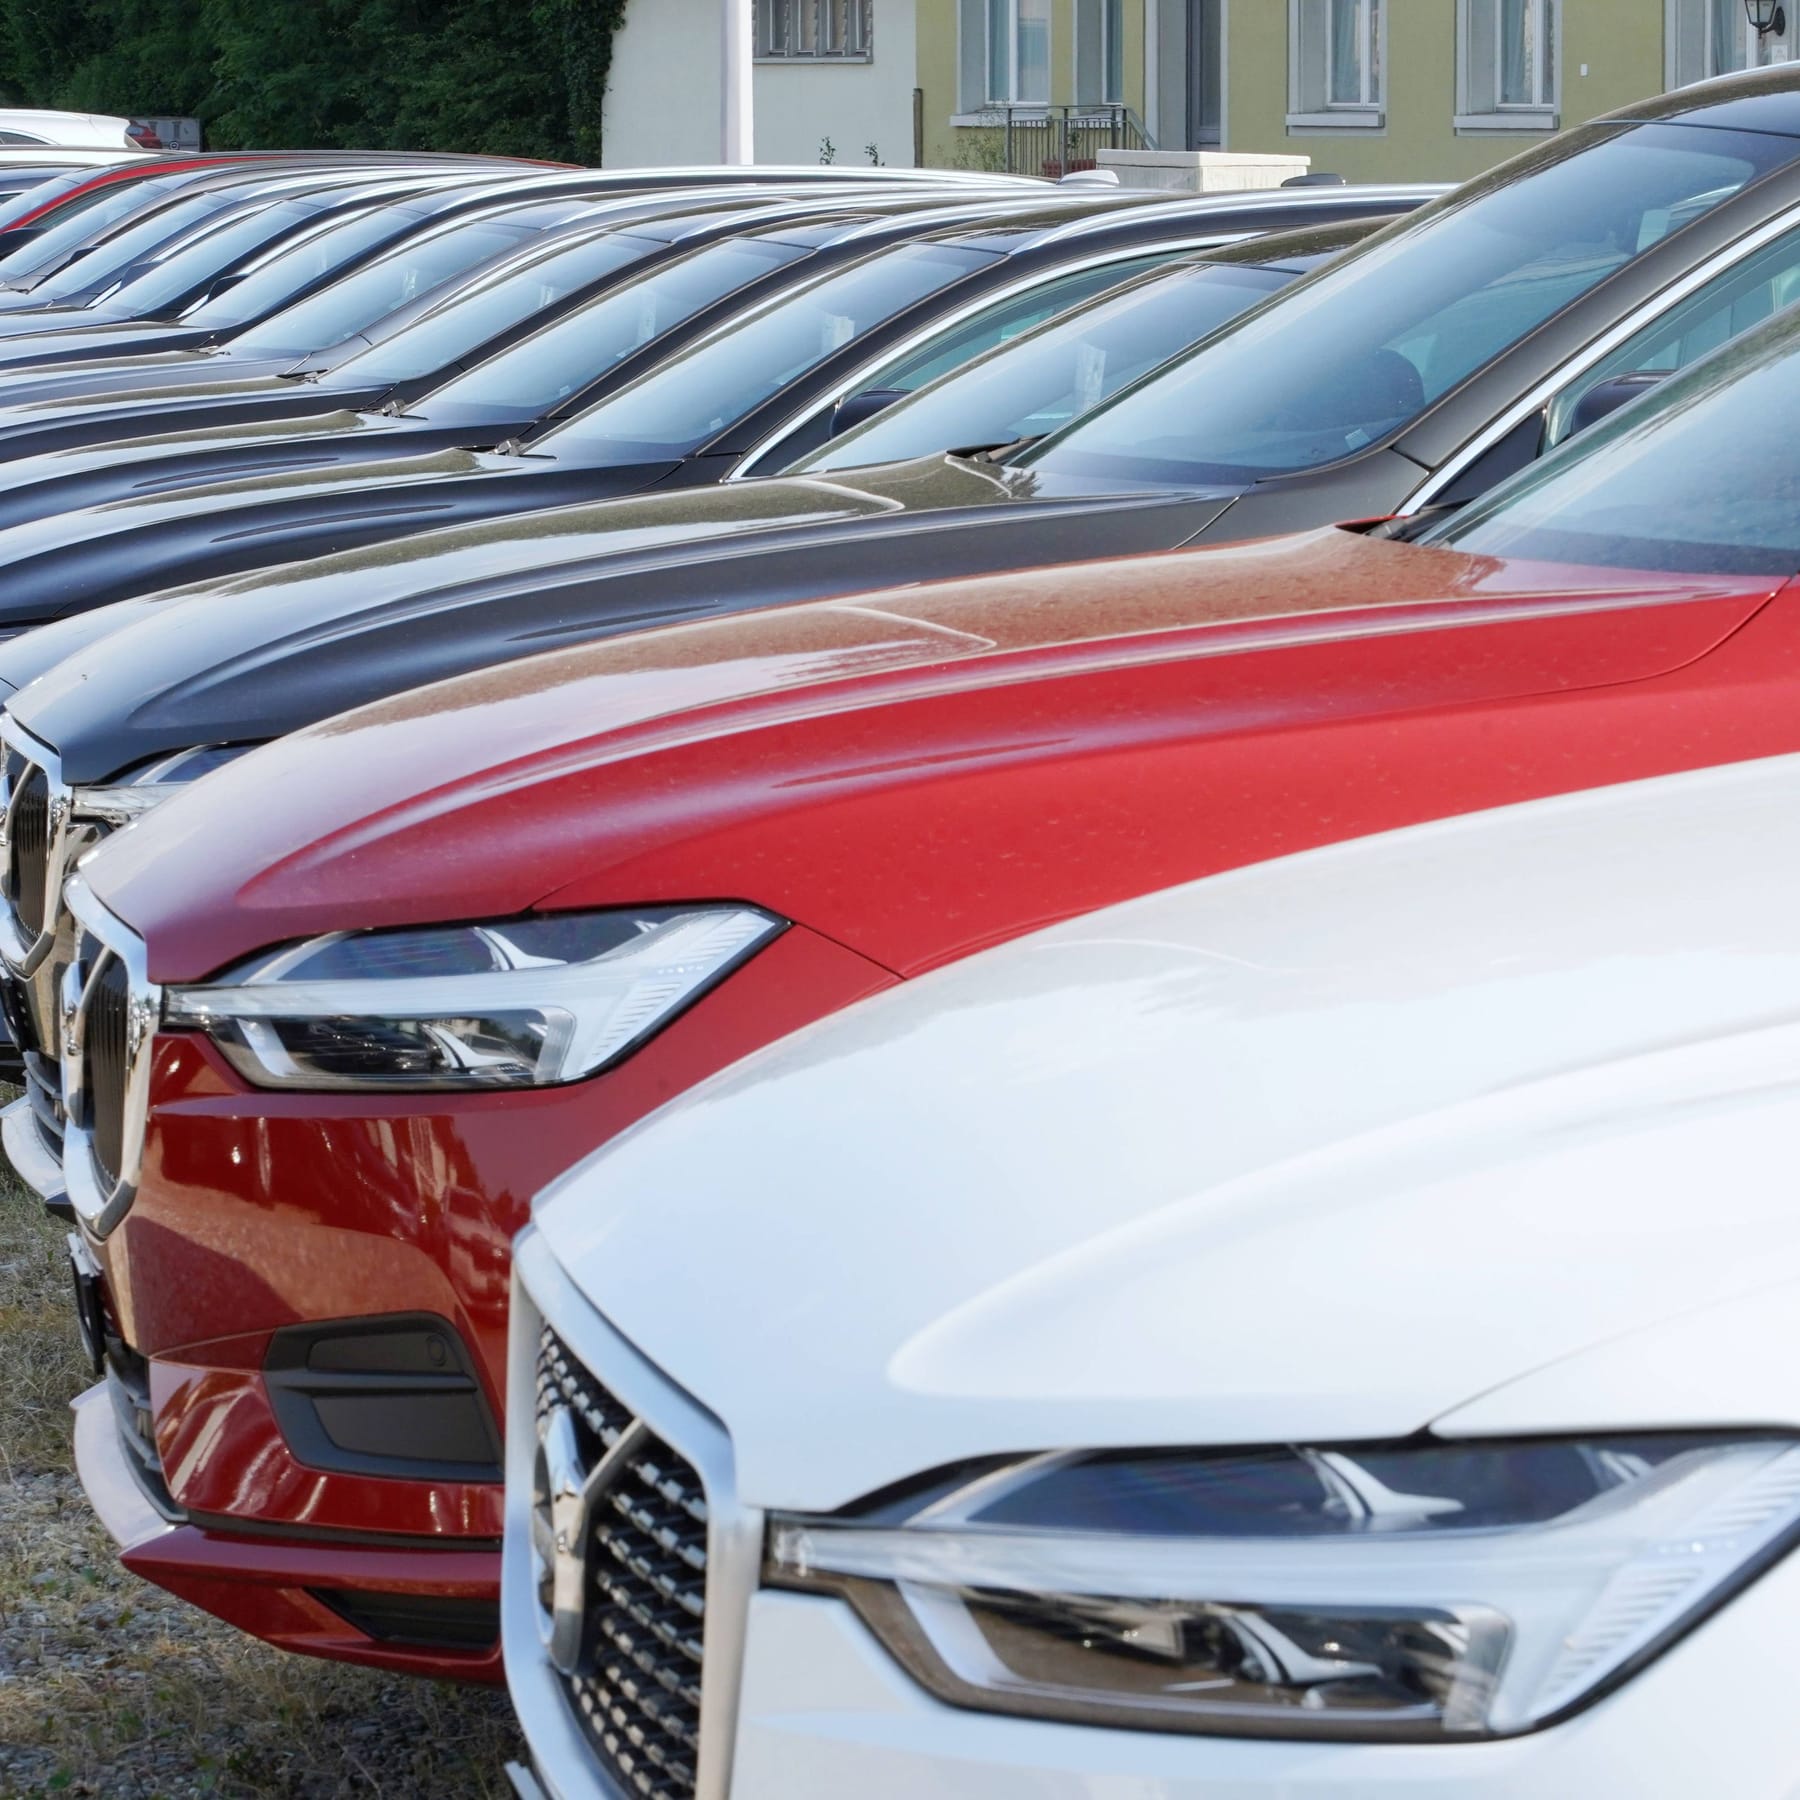 Gebrauchtwagen-Preise fallen: Im Schnitt unter 30.000 Euro